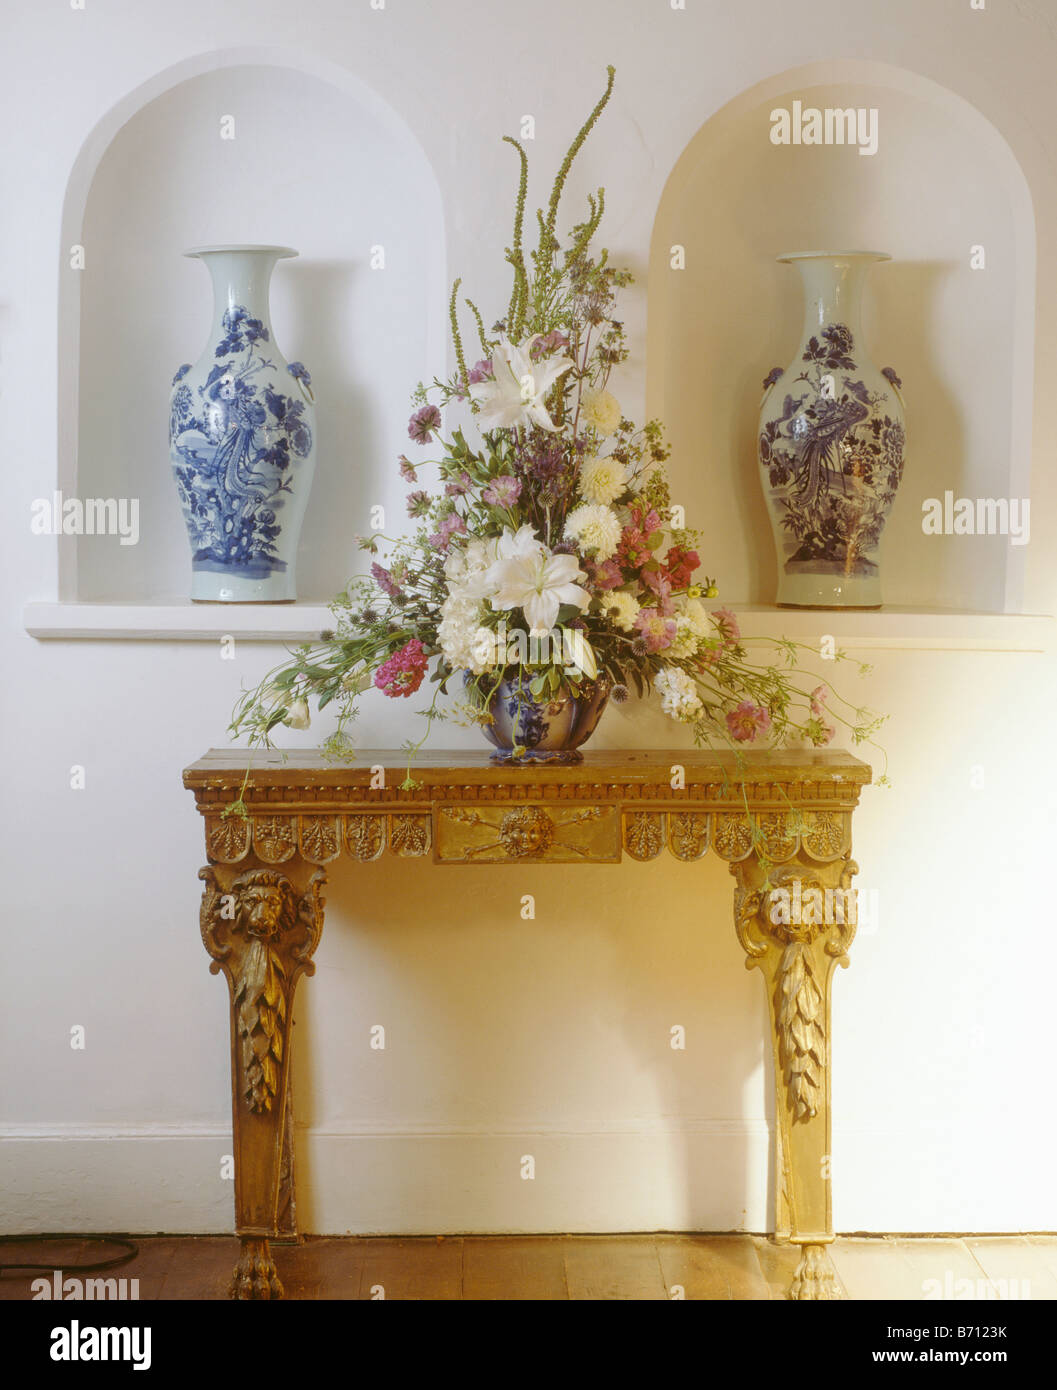 Lys Blanc en arrangement floral frais sur console table en face d'alcôves avec grands vases bleu et blanc Banque D'Images